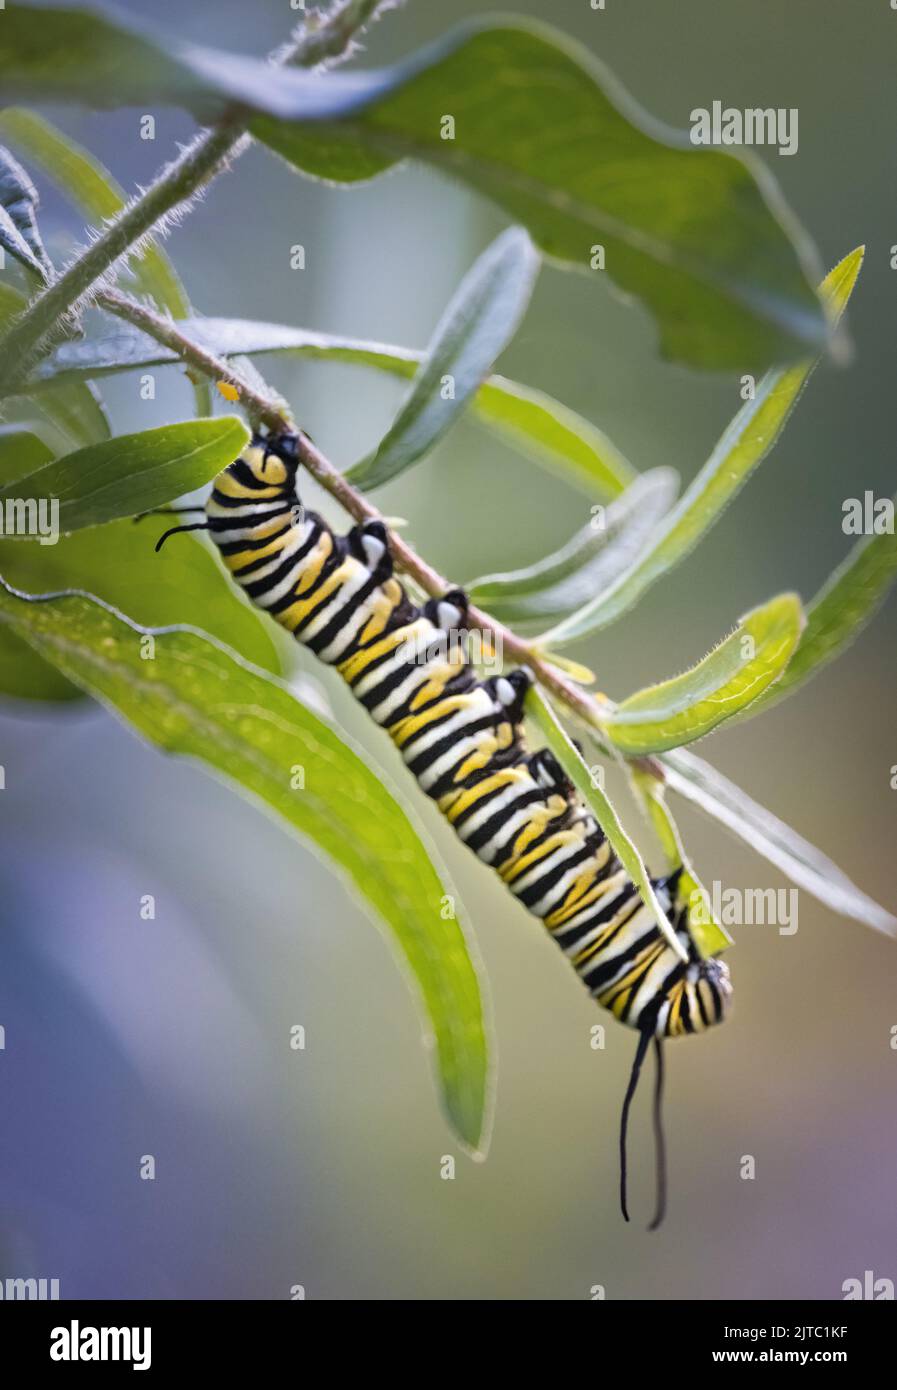 Eine gestreifte Monarch-Schmetterlingsraupenlarve, Danaus plexippus, die im Sommer oder Herbst in Lancaster, Pennsylvania, üppiges grünes Laub frisst Stockfoto